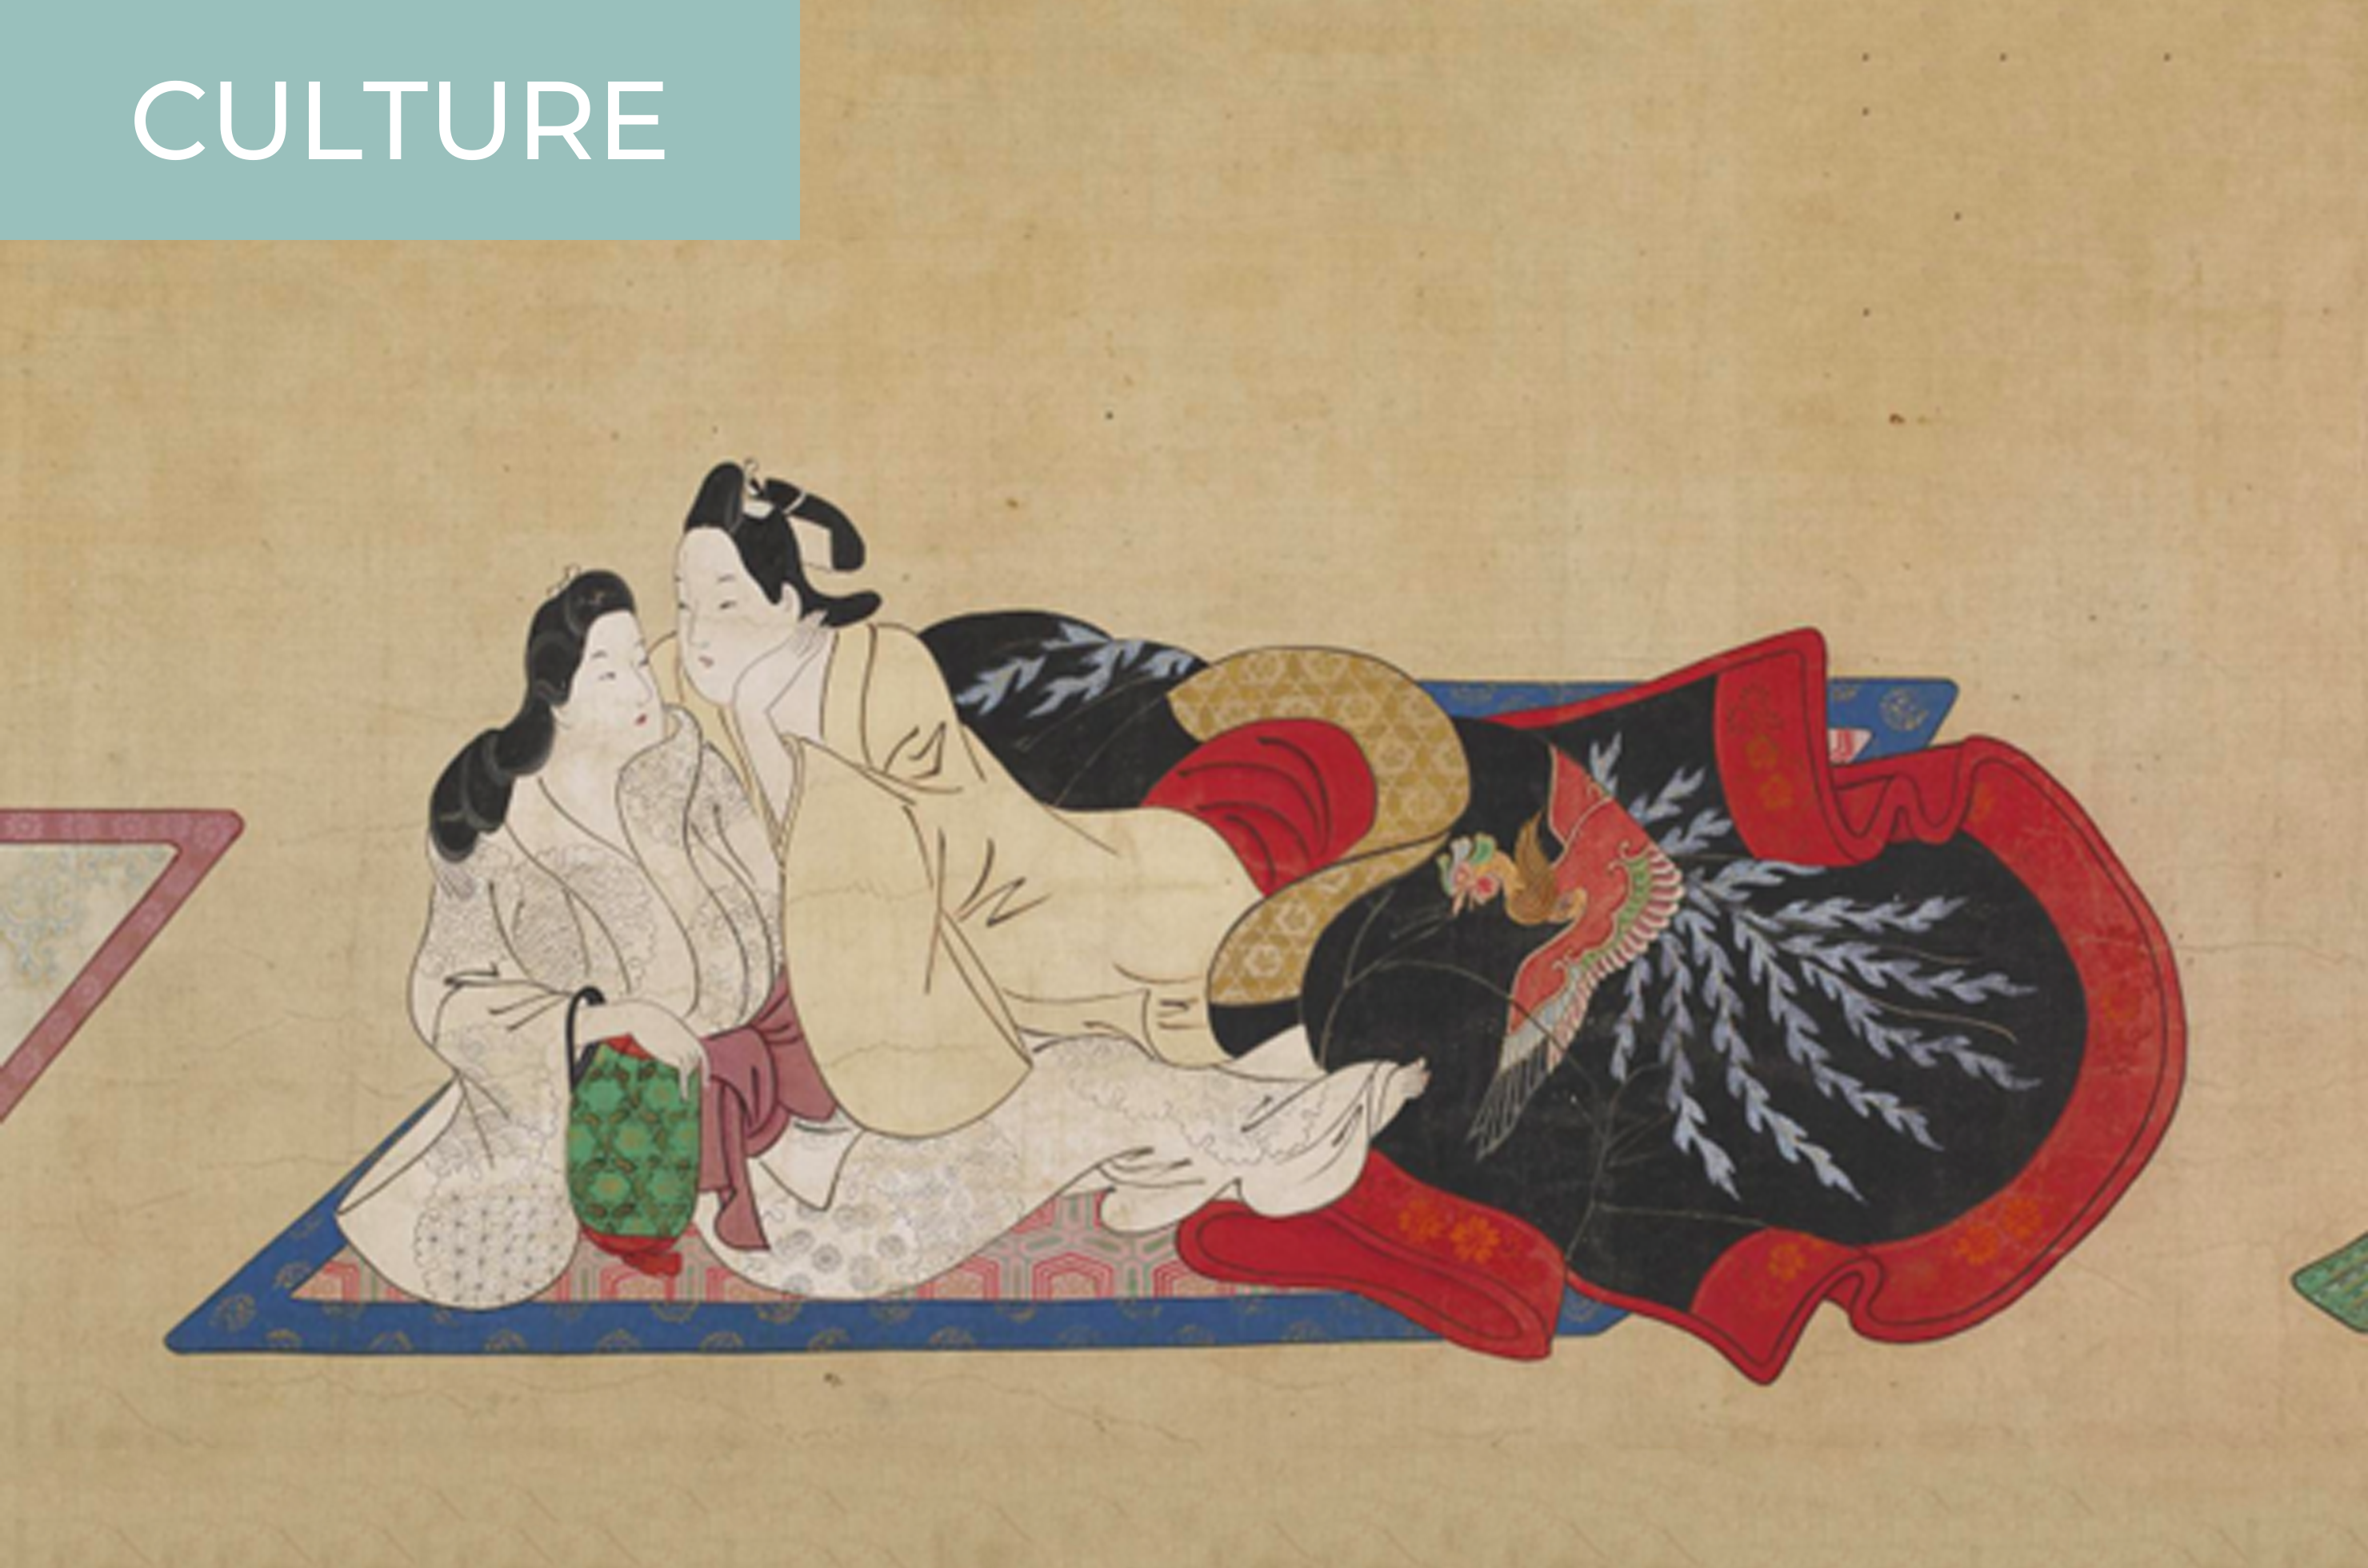 Shunga Ancient Japanese Pornography, or Something Else?